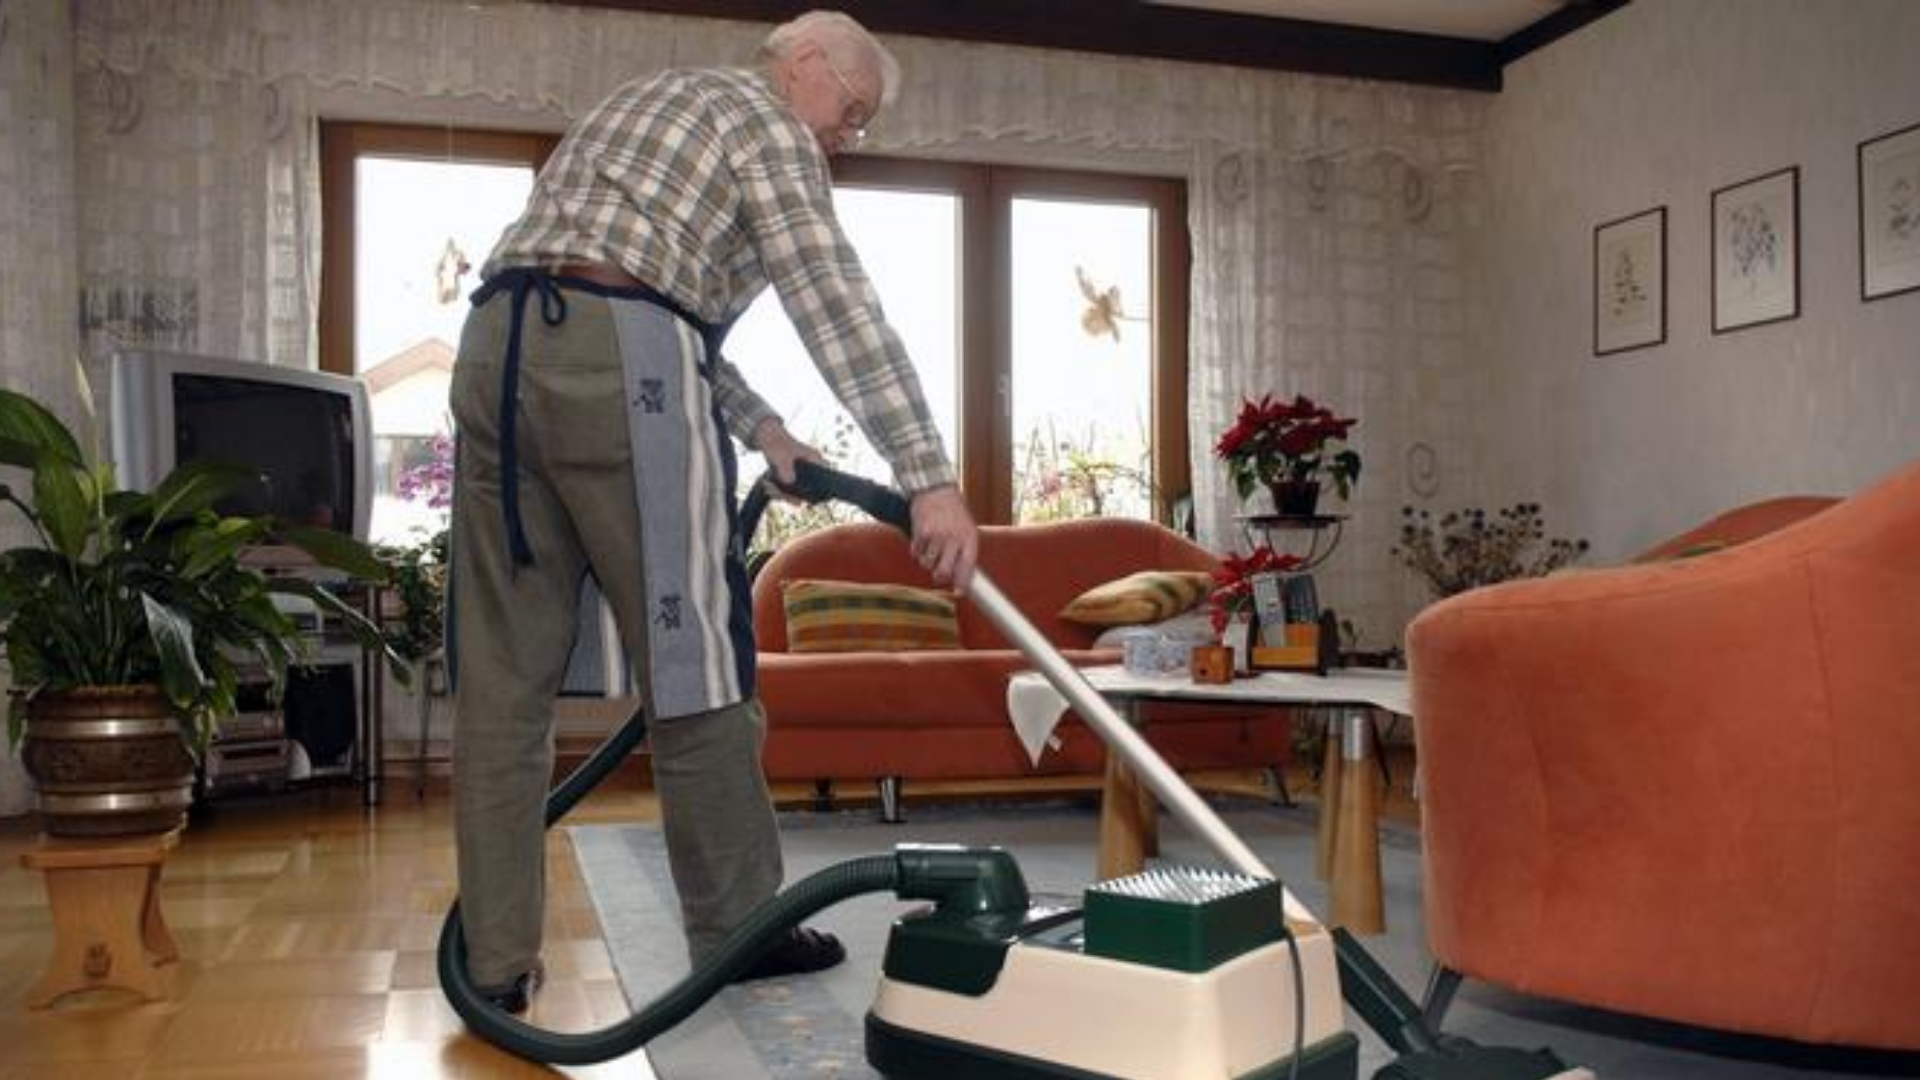 In-Older-People-Housework-Helps-1